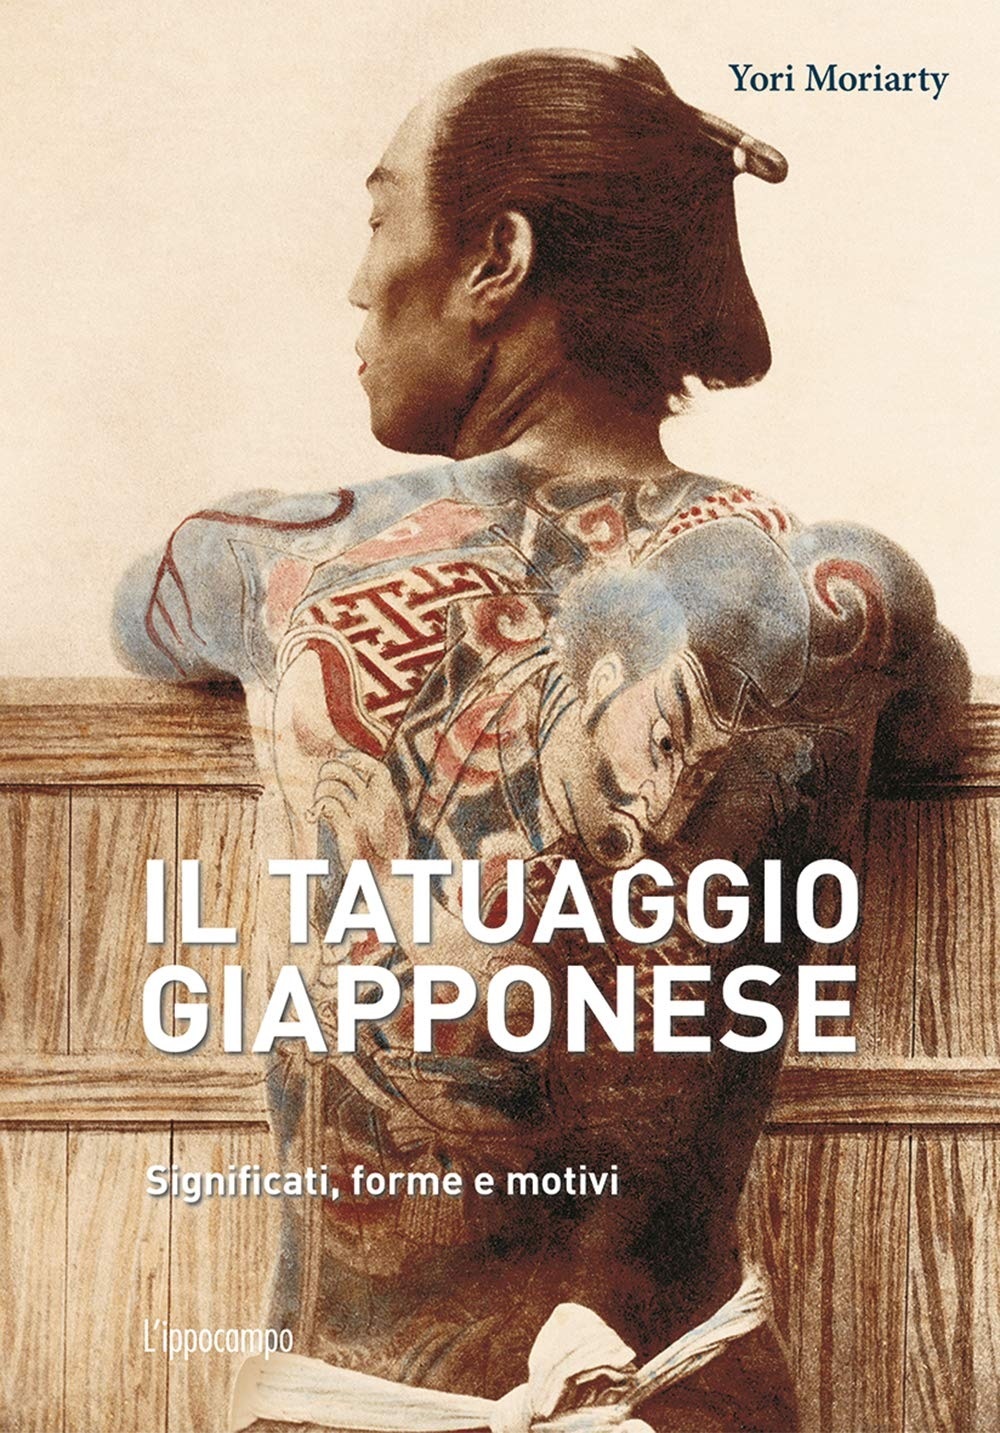 Yori Moriarty – Il tatuaggio giapponese. Significati, forme e motivi (L'ippocampo, Milano 2021)